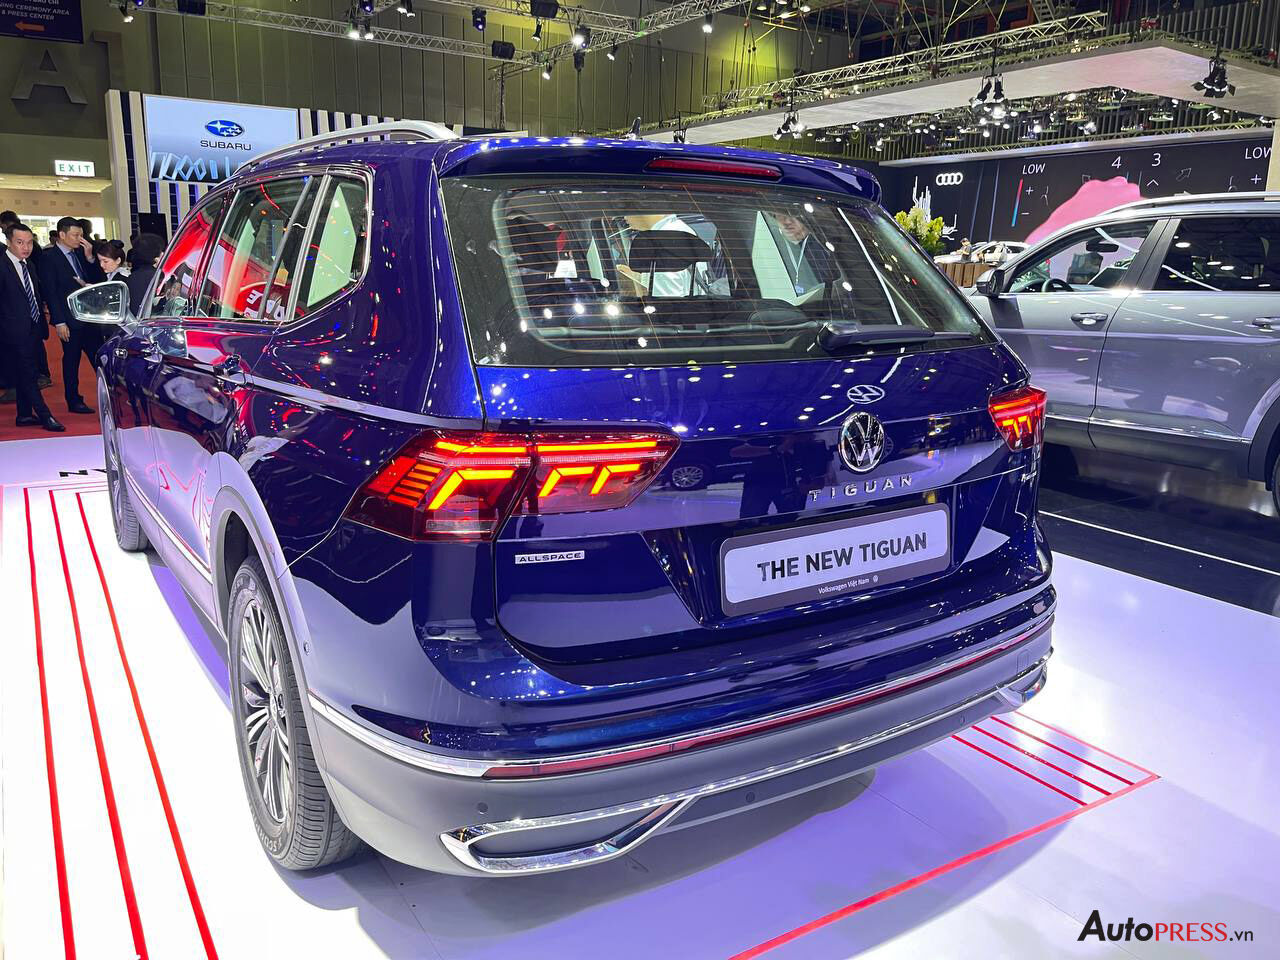  Volkswagen ra mắt xe Tiguan mới